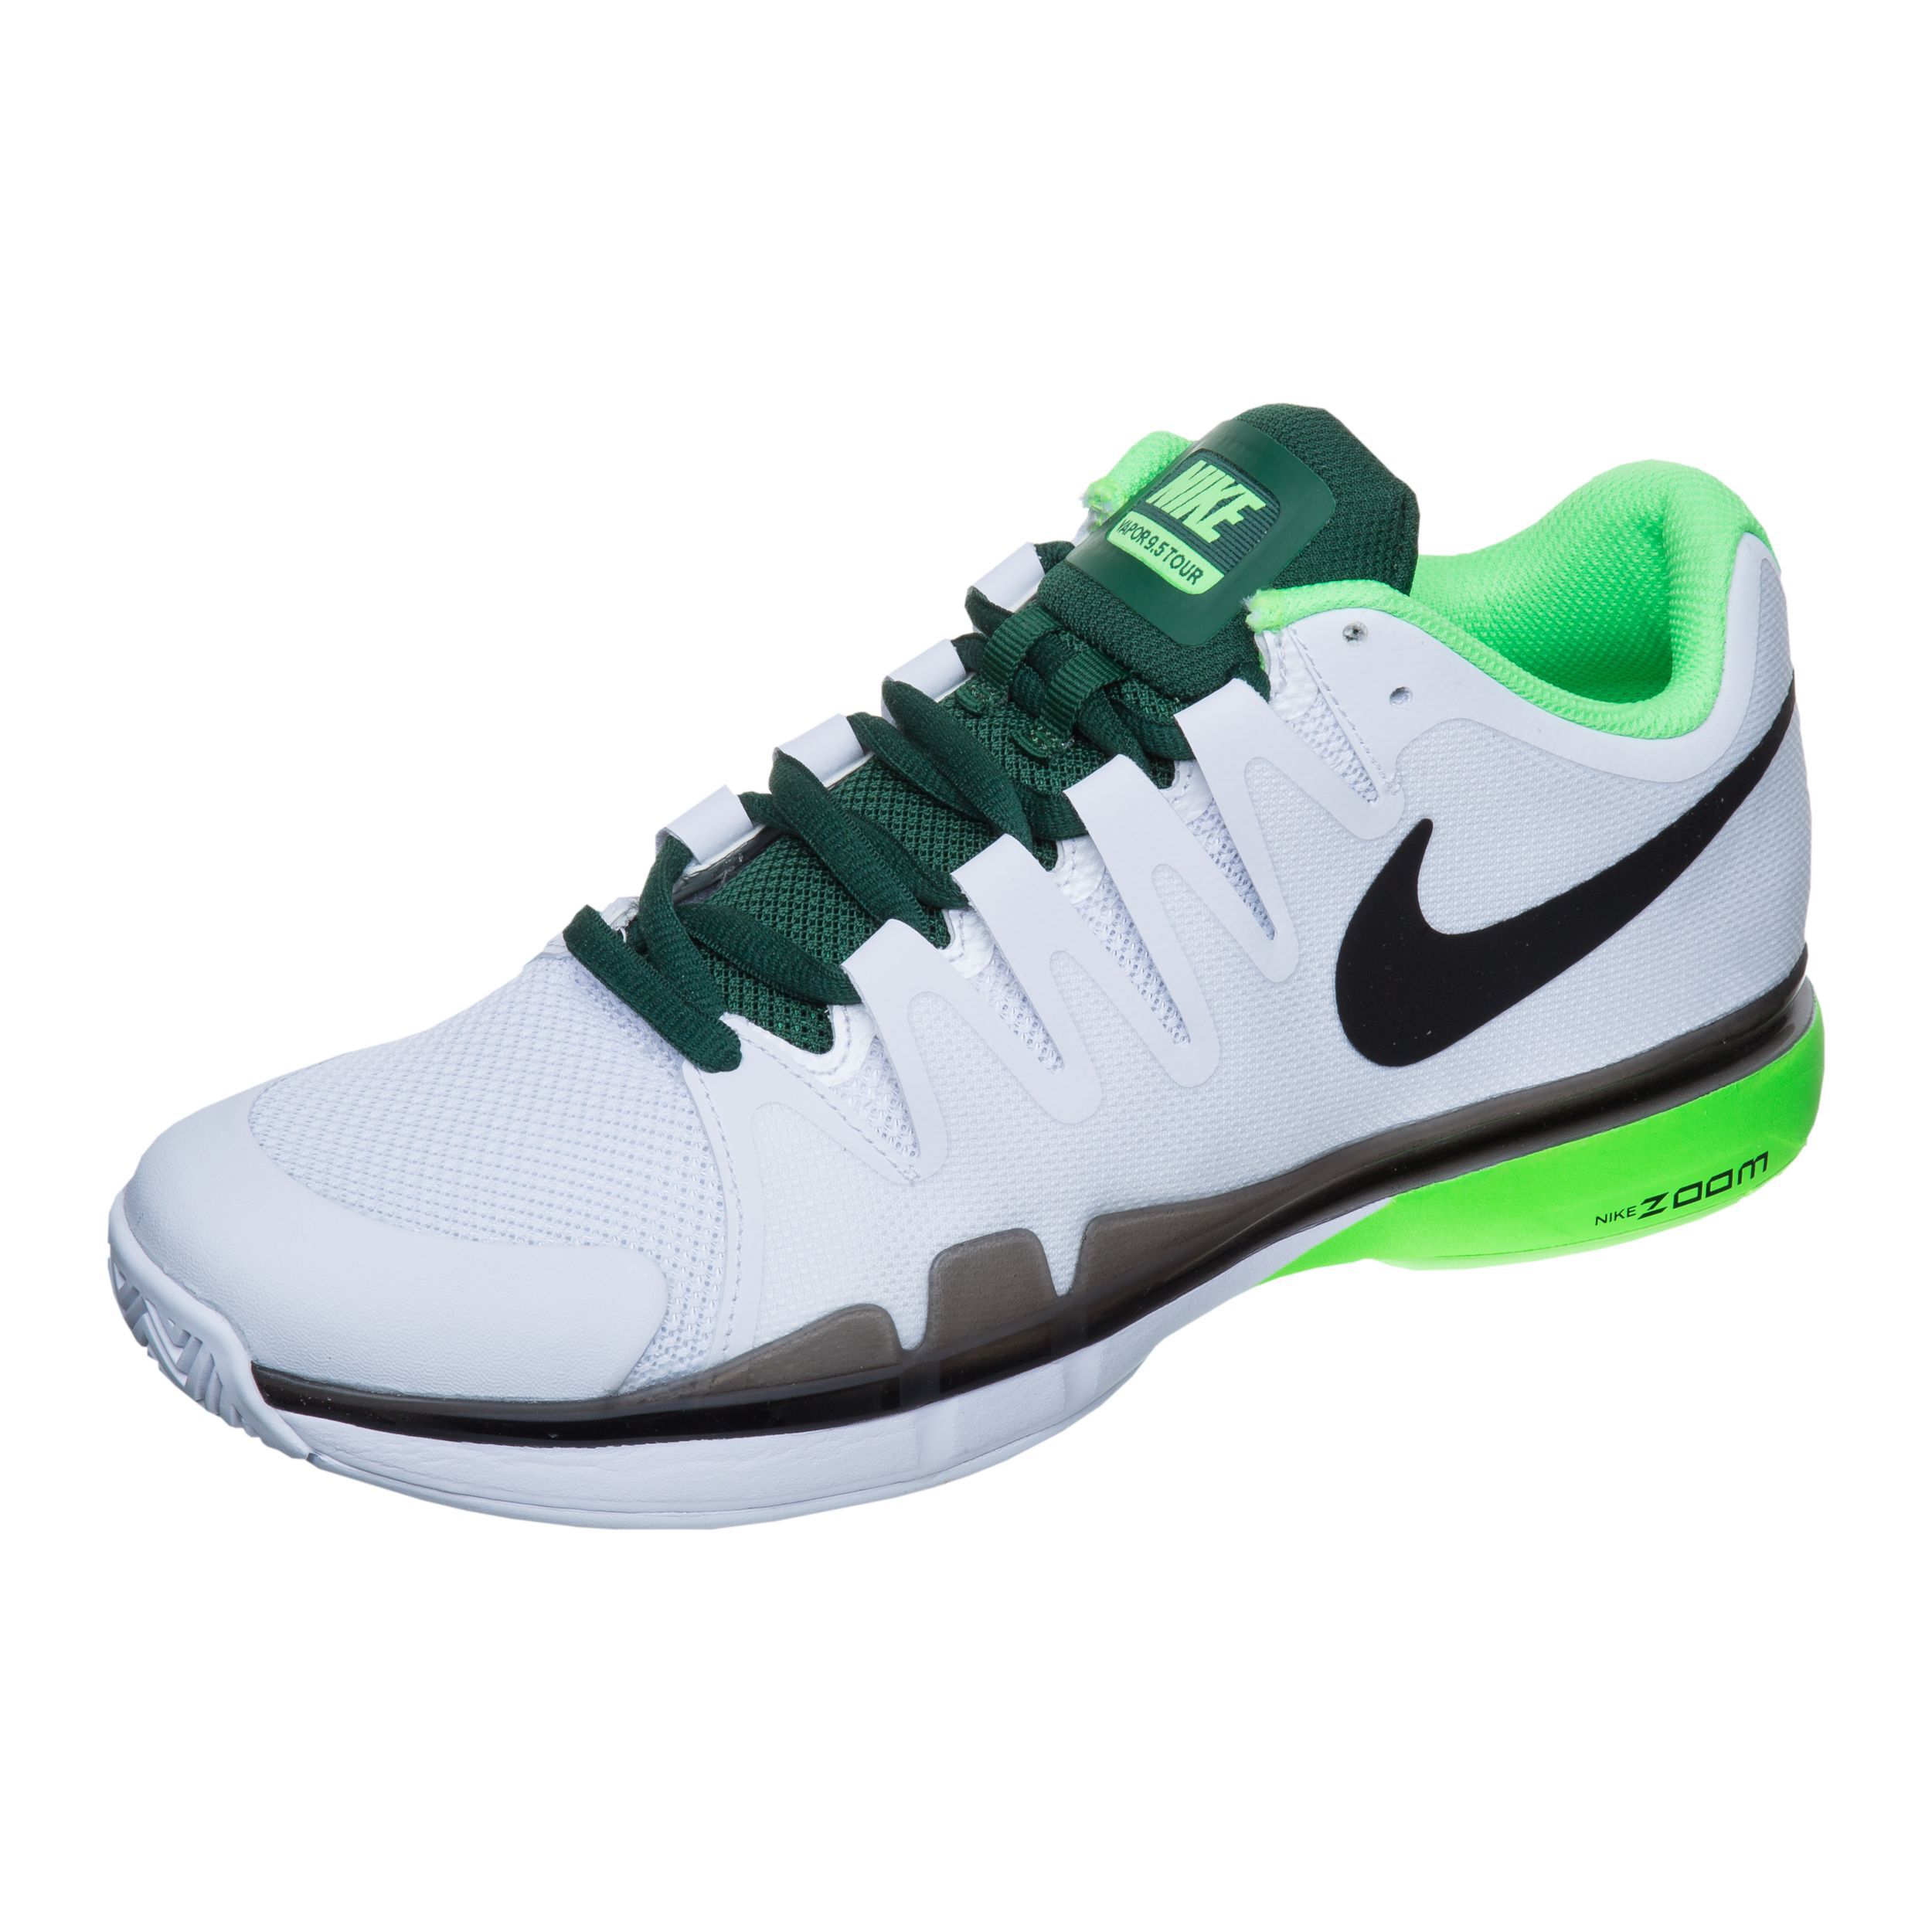 Roger Federer Zoom Vapor 9.5 Tour All Court Shoe Men - White, Green